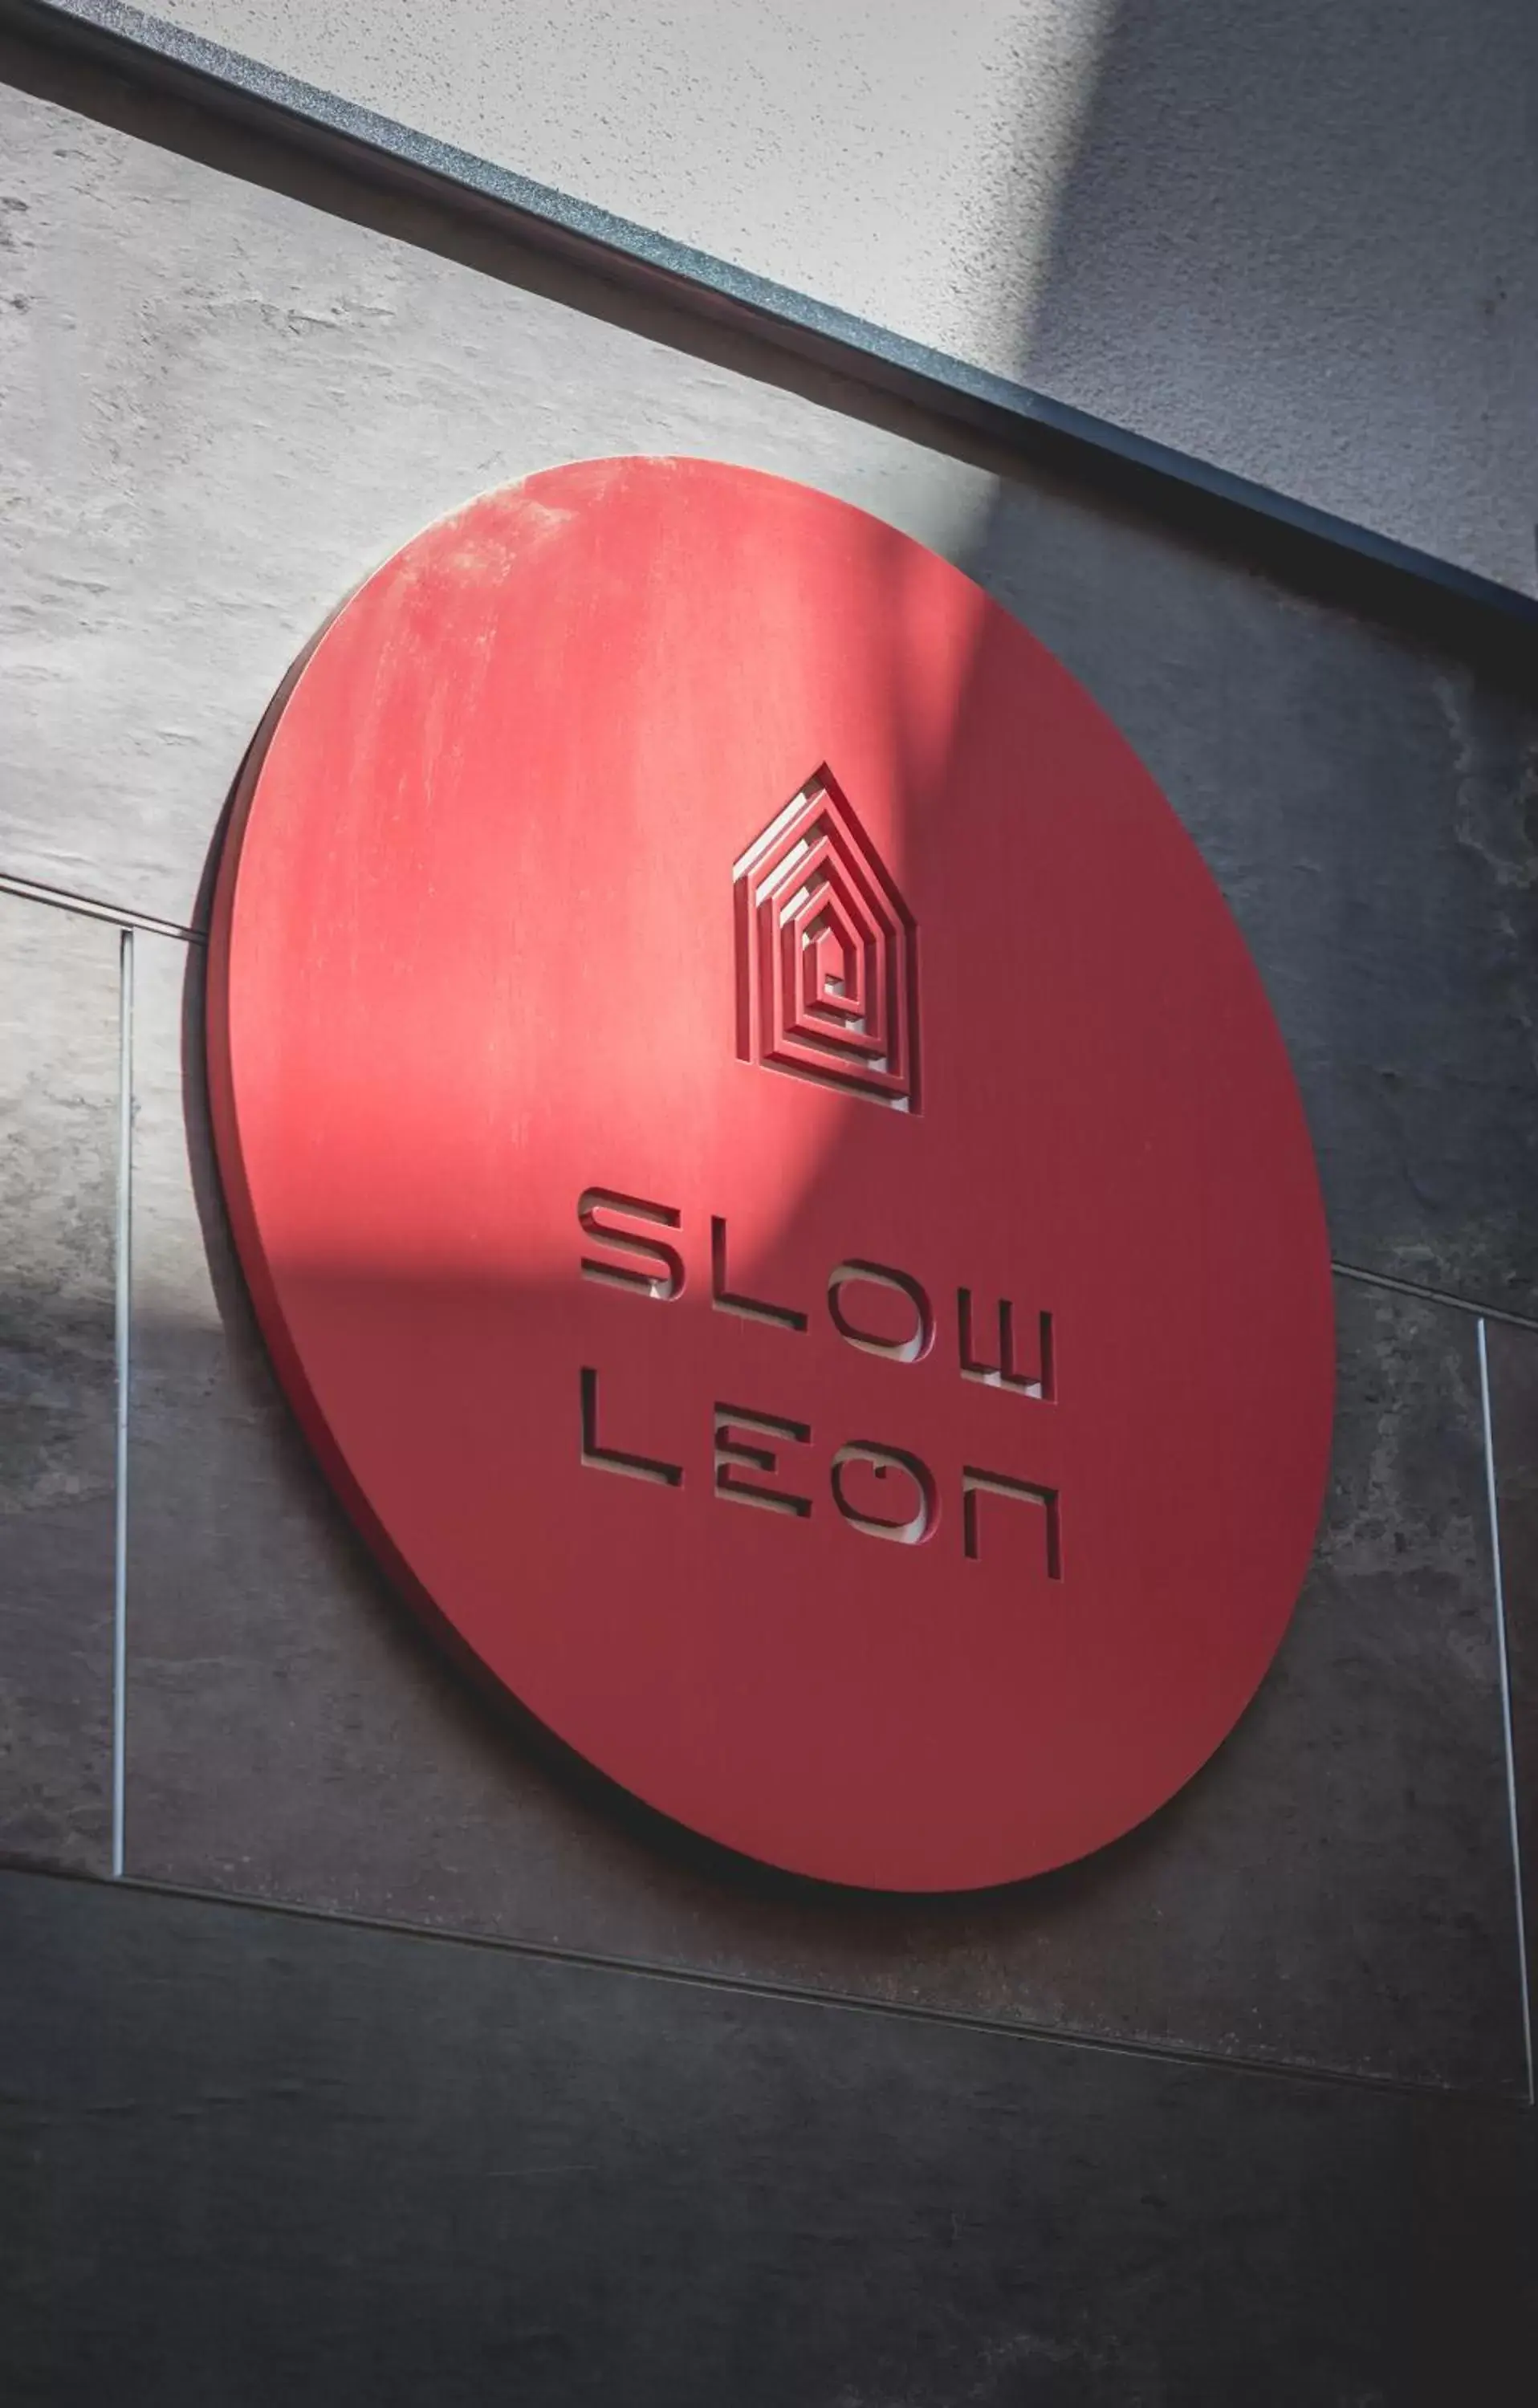 Property logo or sign, Property Logo/Sign in Slow León Apartamentos Turísticos